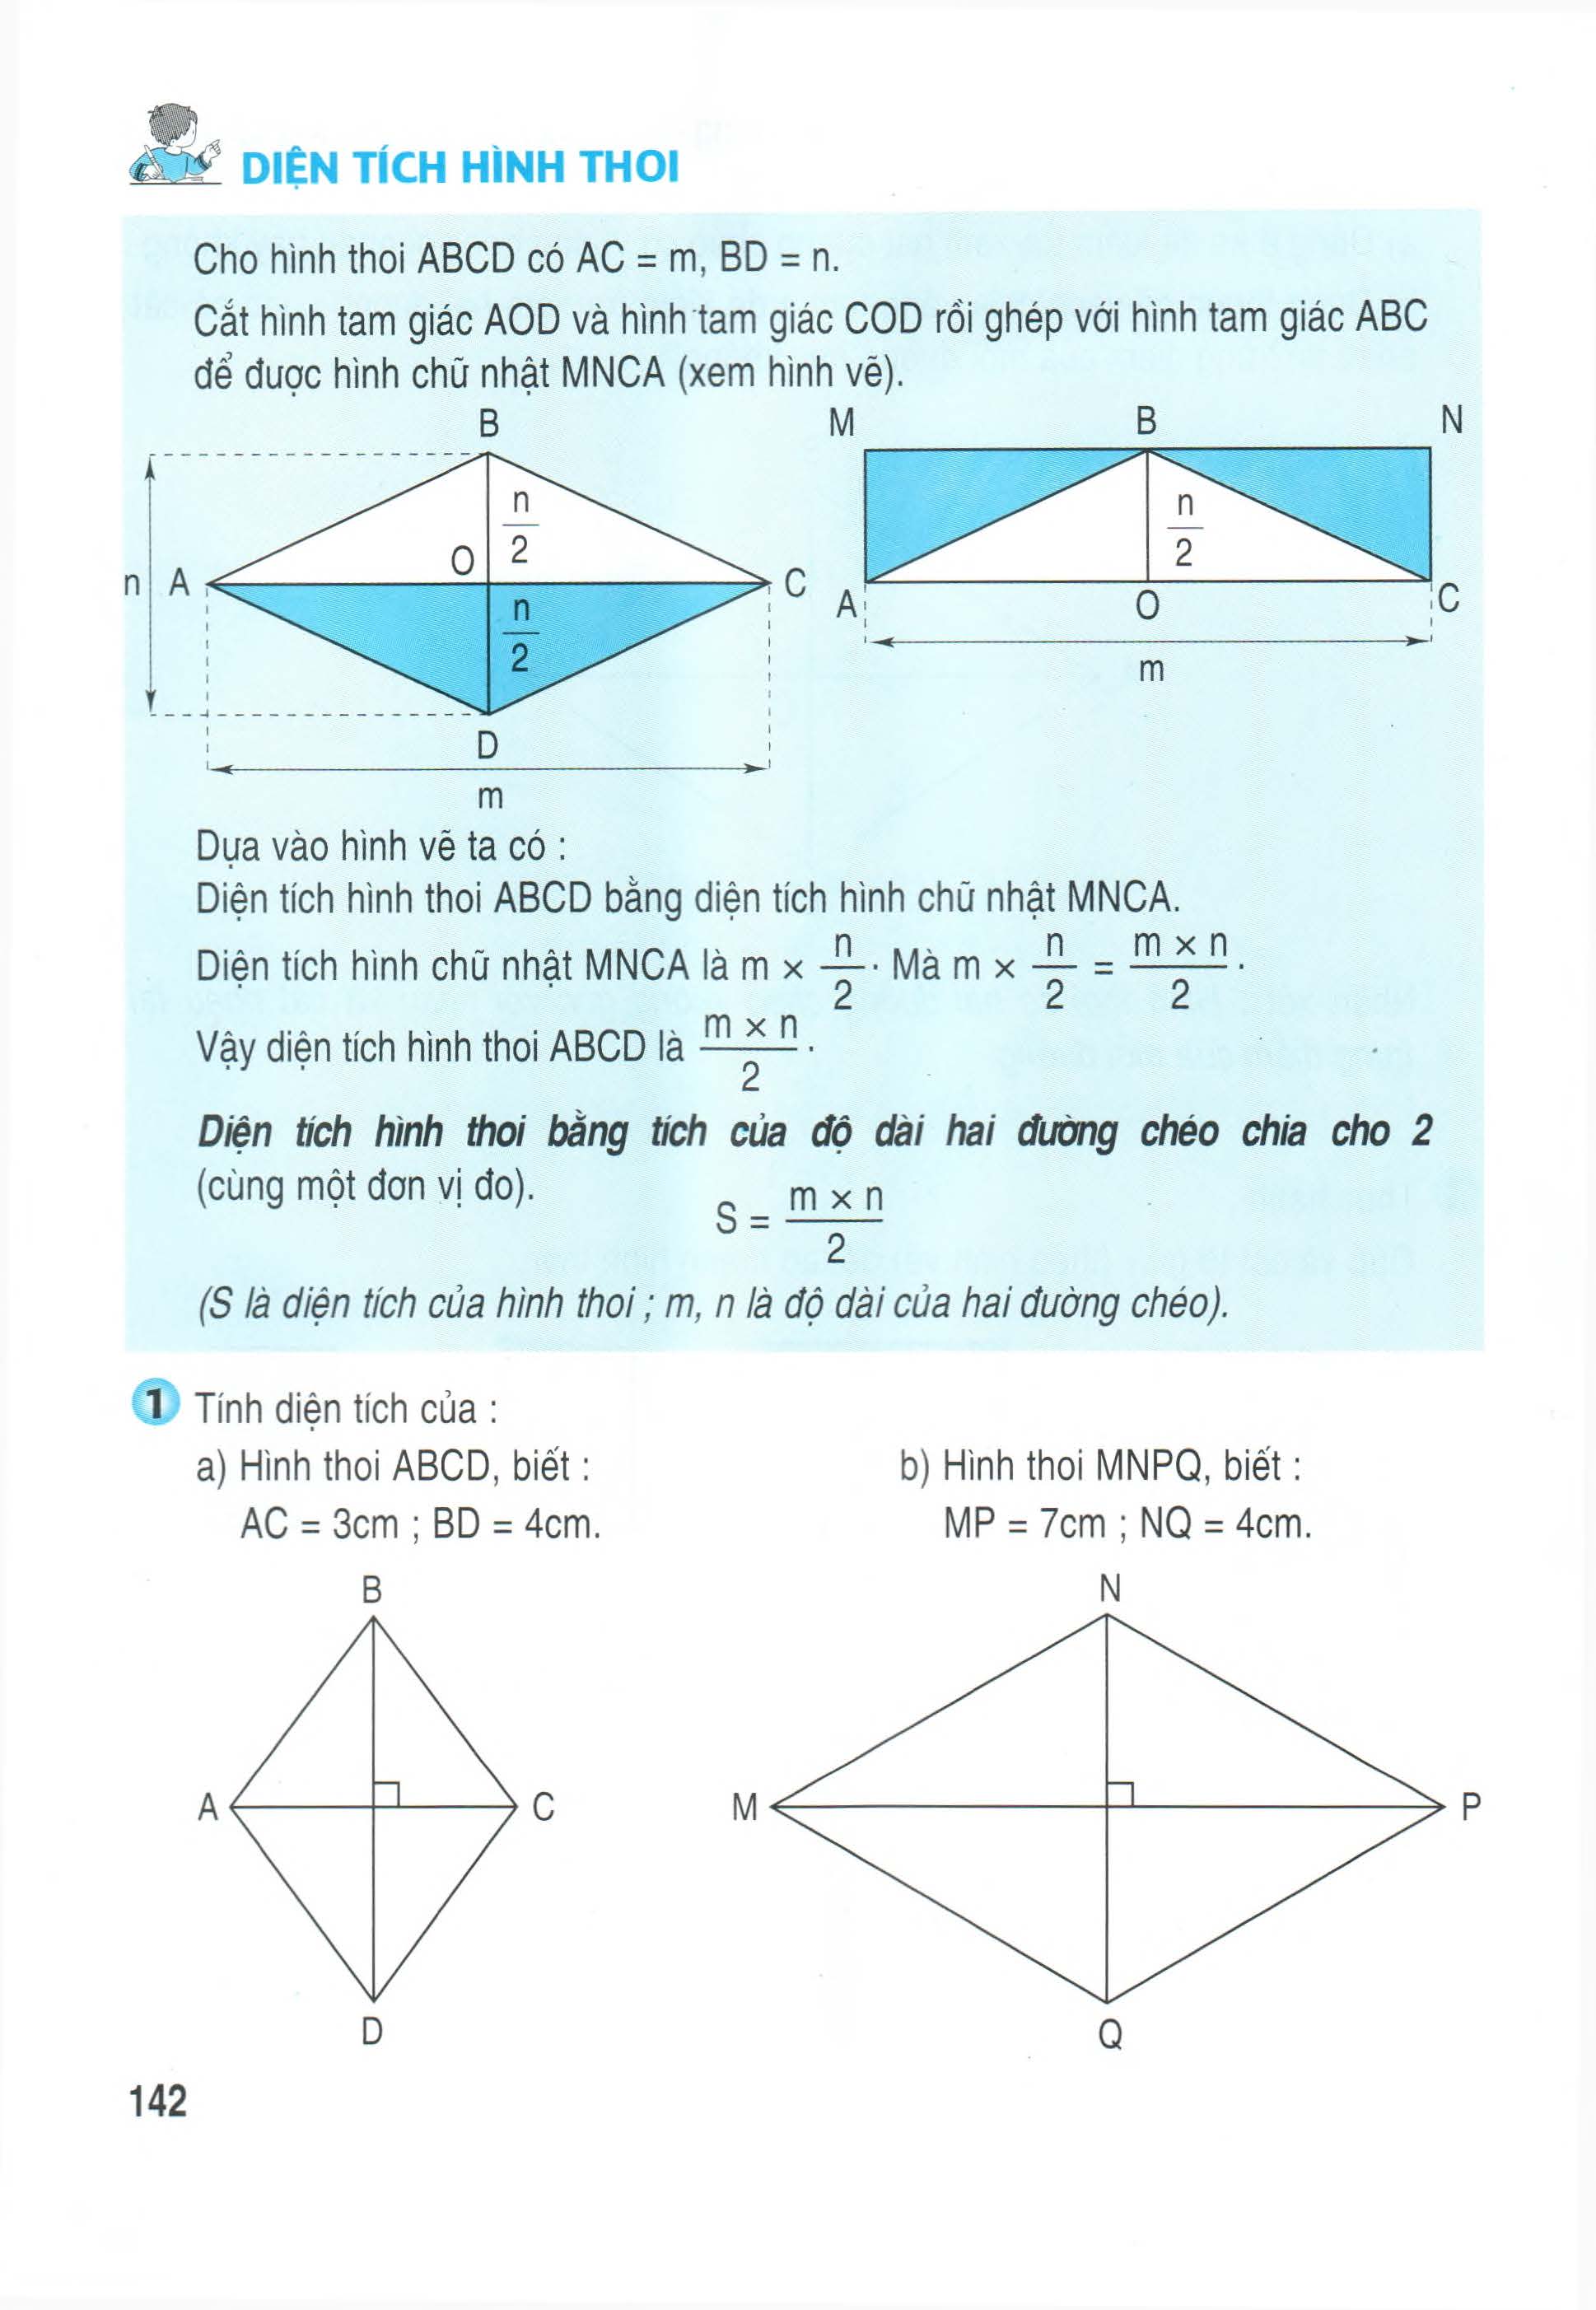 Cho hình vẽ sau Hình thoi ABCD có O là giao điểm của hai đường chéo OA   9cm OB  6cm Biết rằng hình thoi có hai đường chéo vuông góc